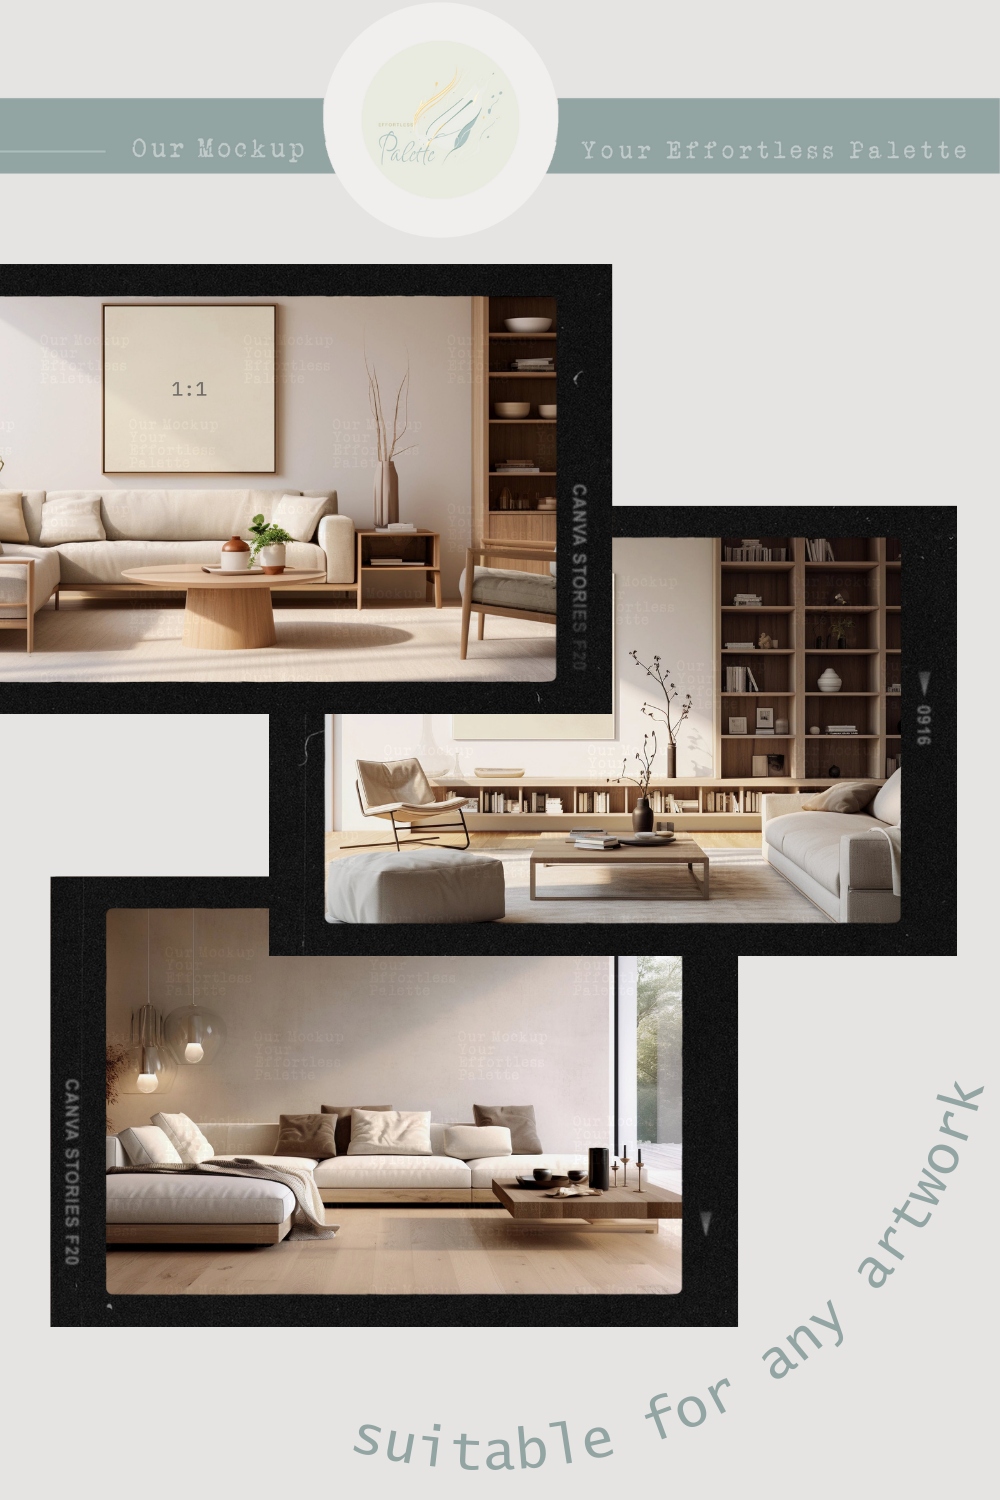 Four Frame Mockup Bundle, modern interior living room, jpg png & psd w/ smart object pinterest preview image.